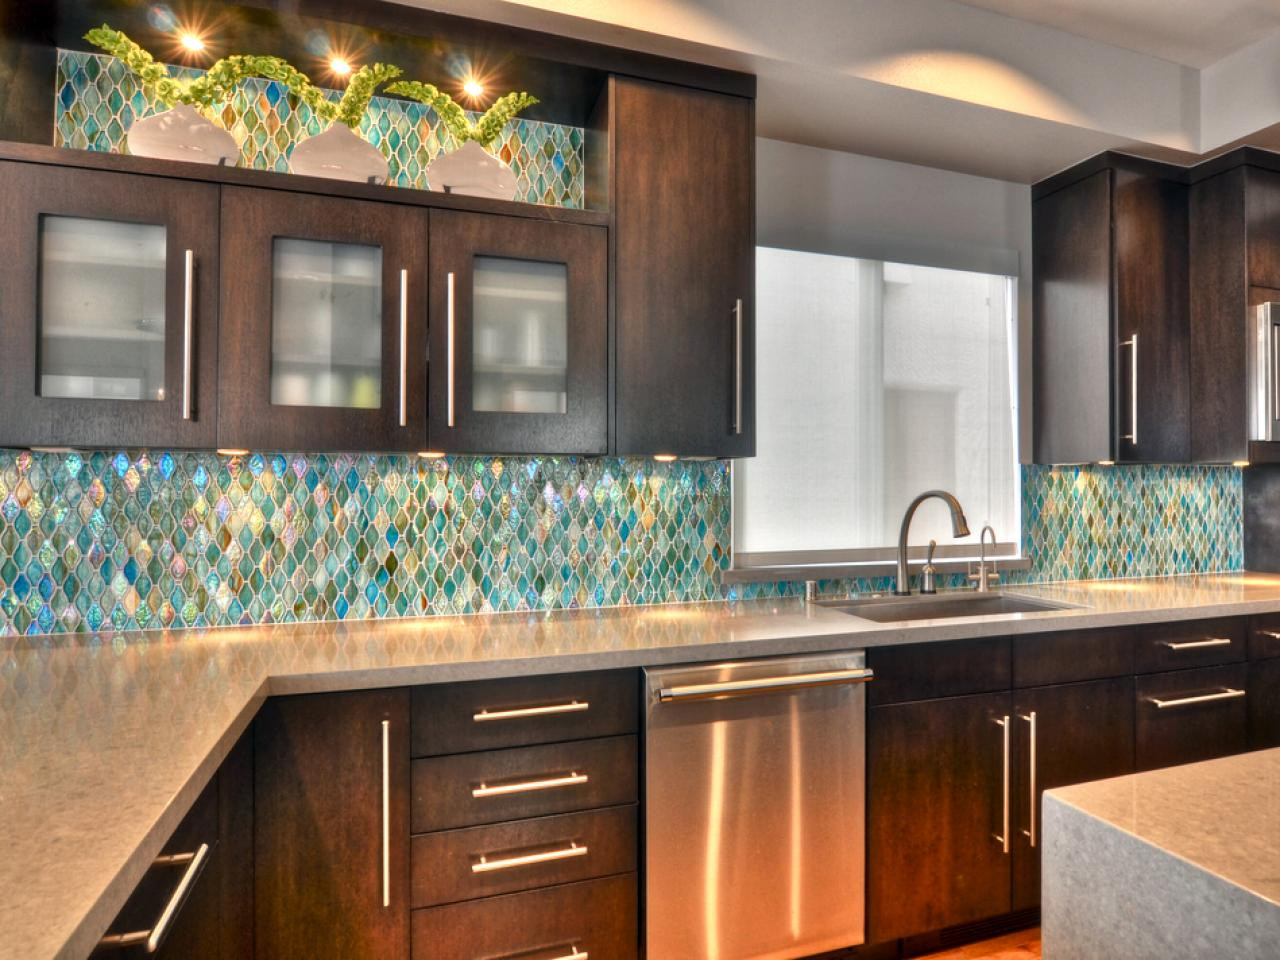 Kitchen Backsplash Tiles Designs
 75 Kitchen Backsplash Ideas for 2020 Tile Glass Metal etc